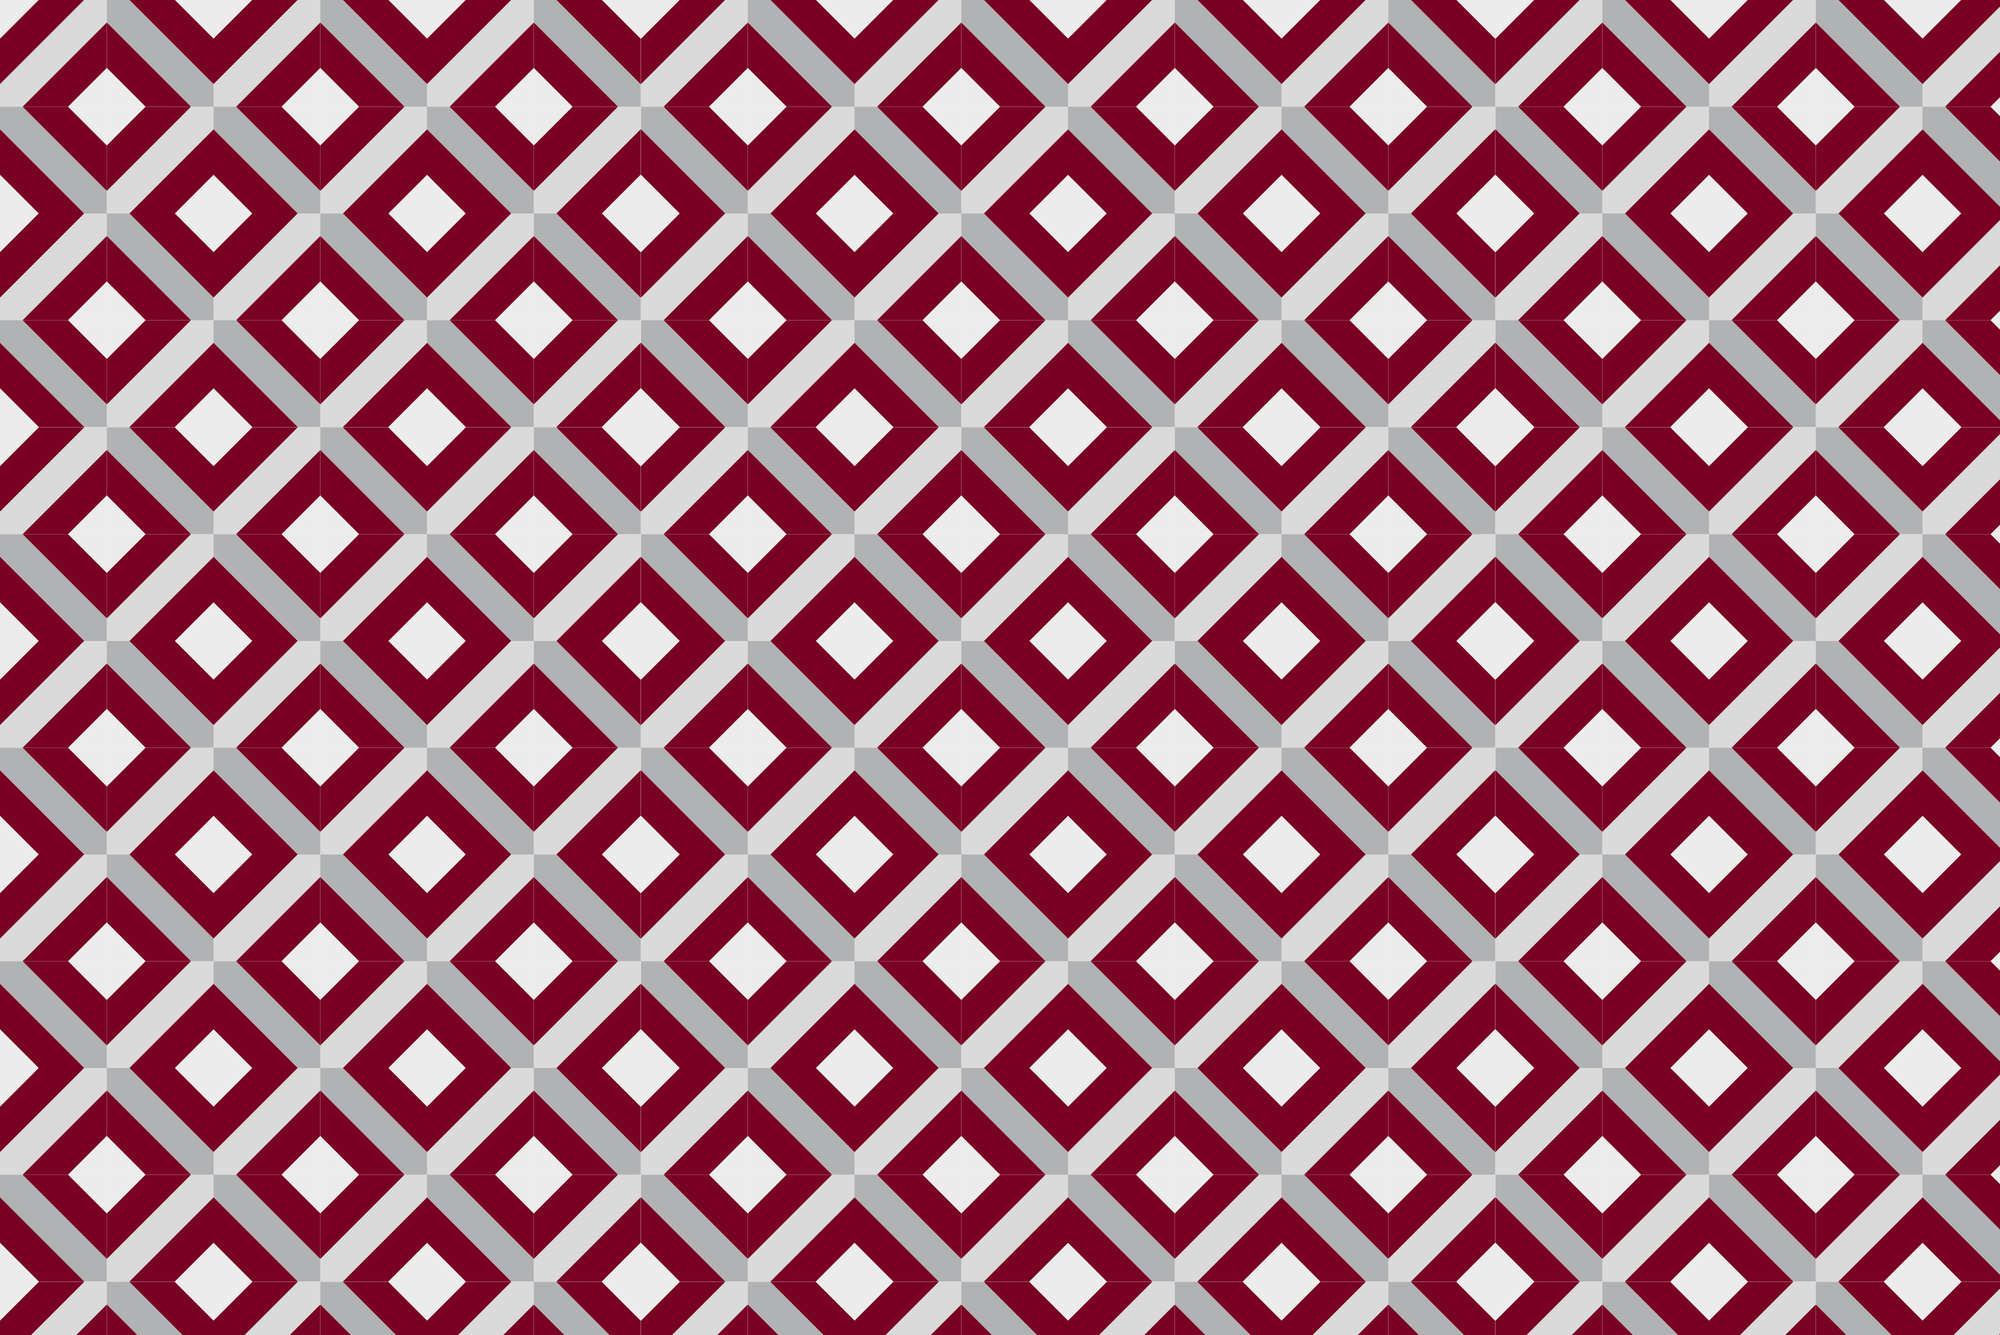             Papier peint design motif boîte avec petits carrés rouge sur intissé lisse mat
        